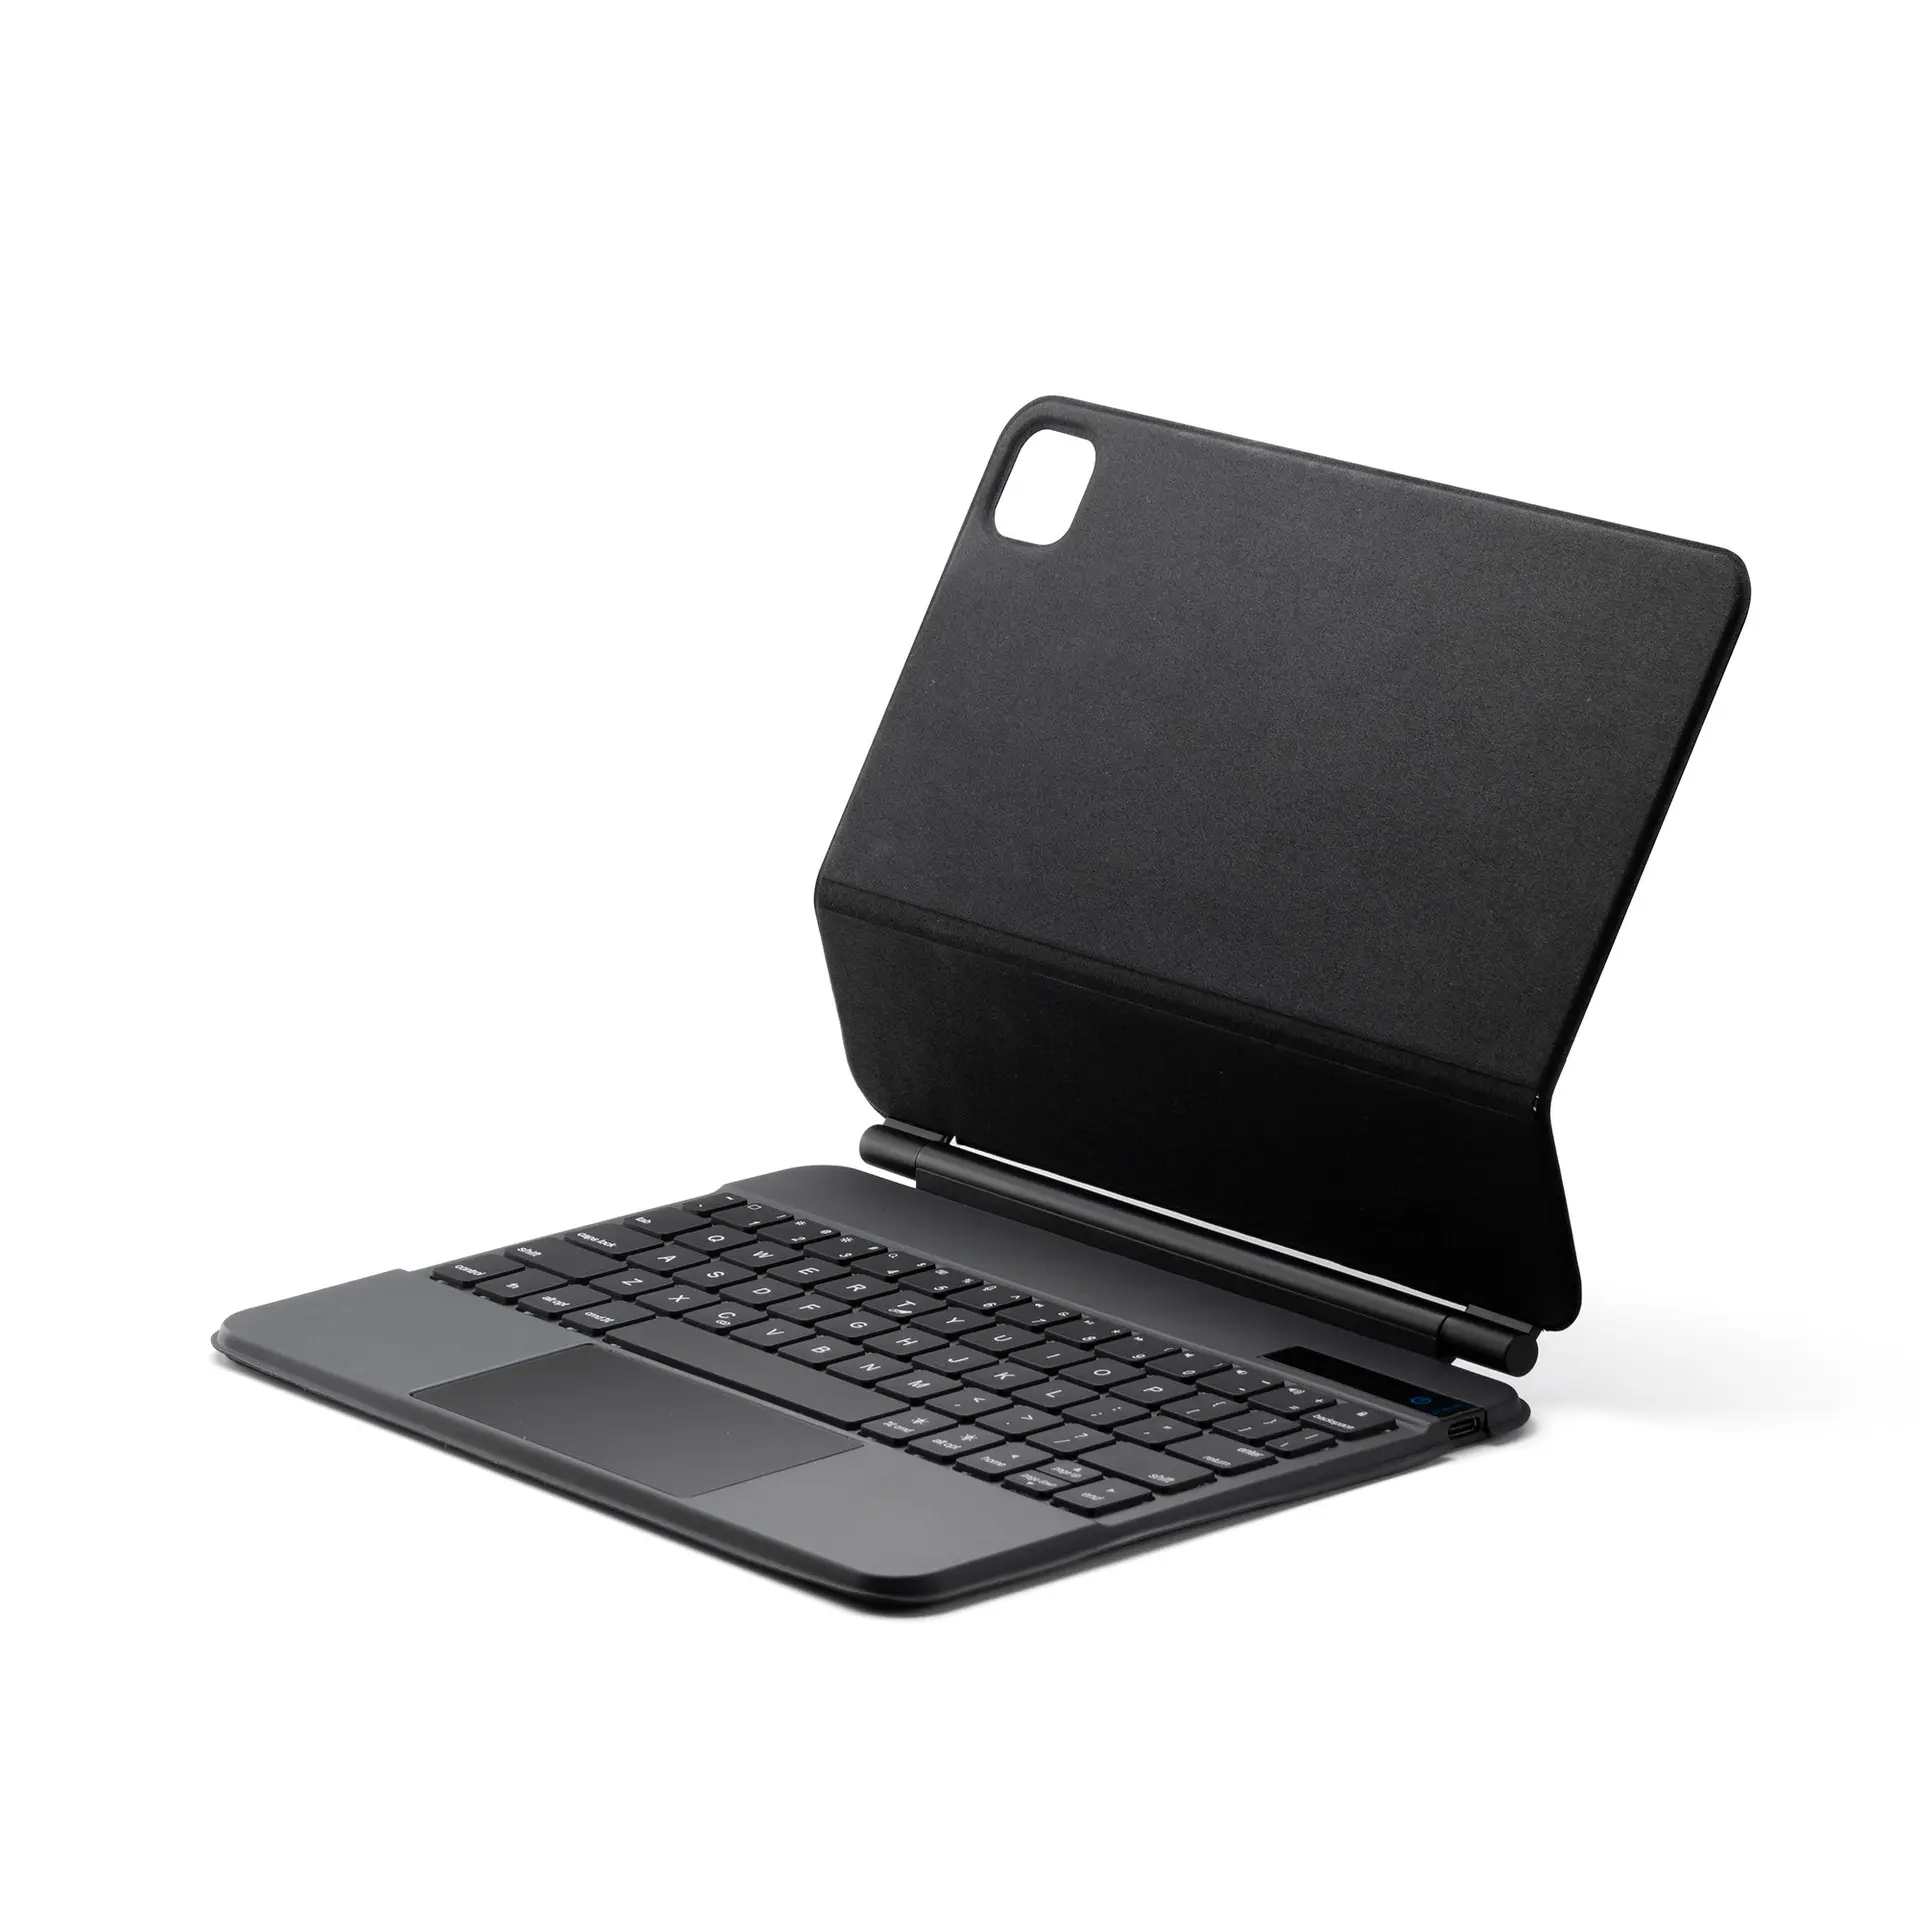 स्लिम ब्लूटूथ 5.1 वायरलेस पु चमड़े के कीबोर्ड के साथ टचपैड मैजिक कीबोर्ड के लिए टचपैड मैजिक कीबोर्ड के साथ मामलों को कवर करता है